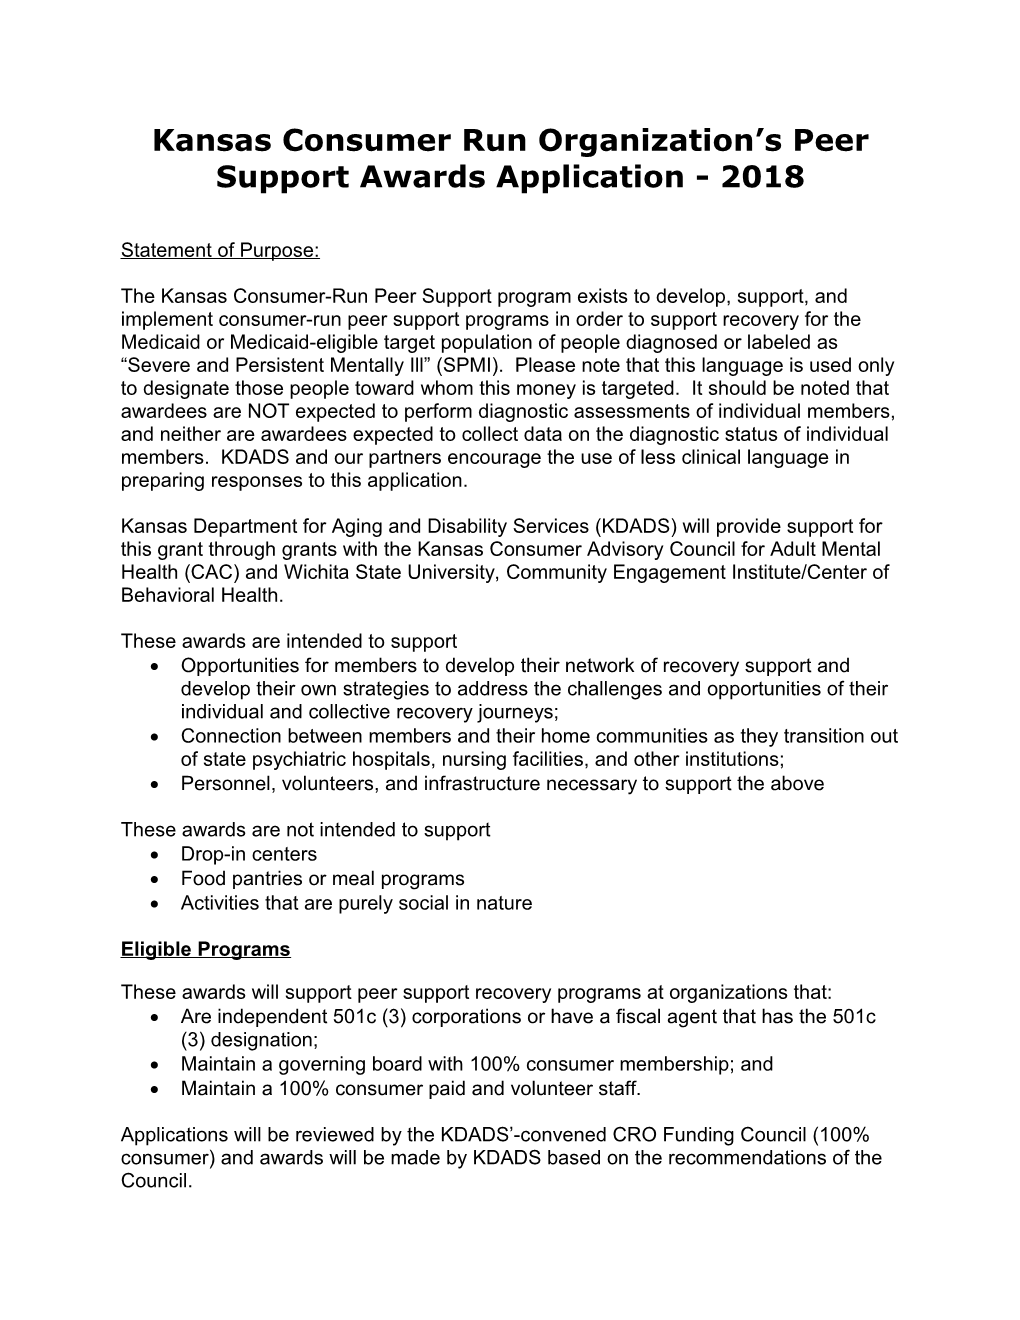 Kansas Consumer Run Organization S Peer Support Awards Application - 2018